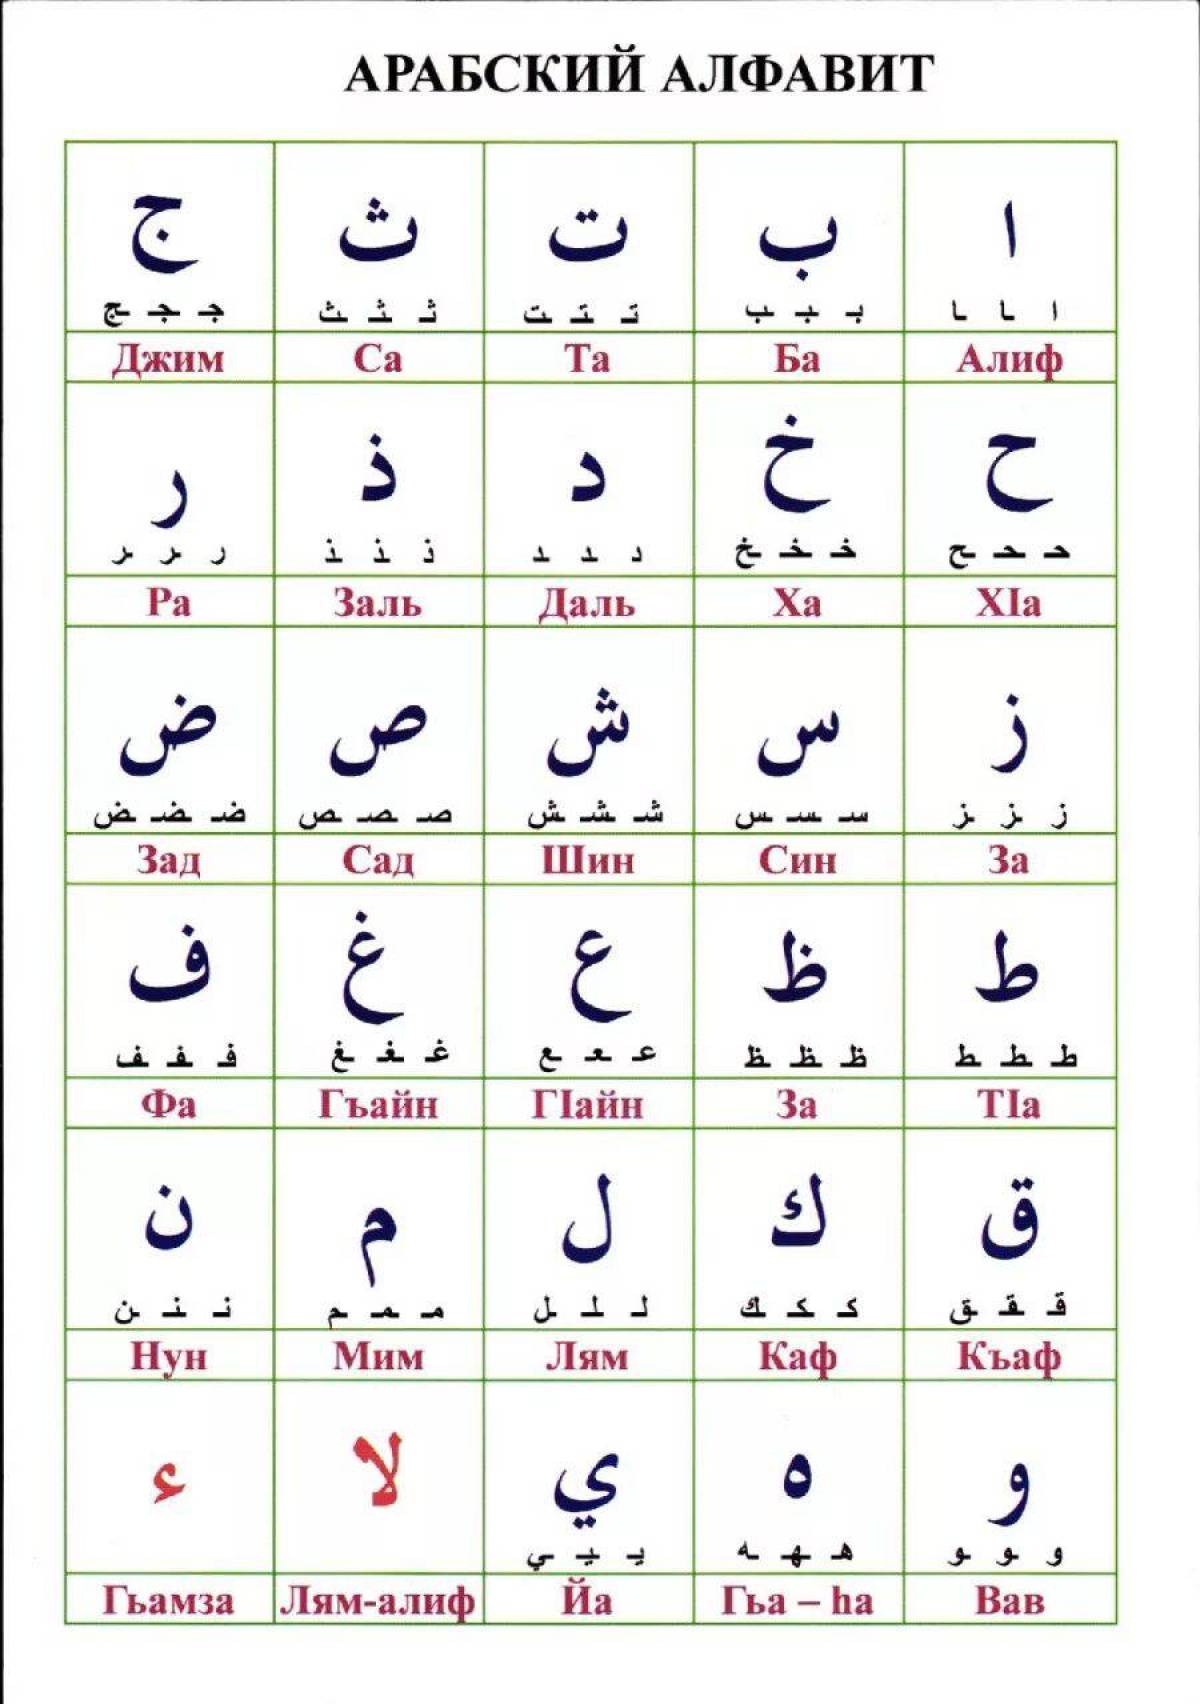 Арабский начинающим для чтения корана. Арабский алфавит таблица. Арабский алфавит с транскрипцией. Арабский алфавит для начинающих детей. Таблица алфавита арабского языка.